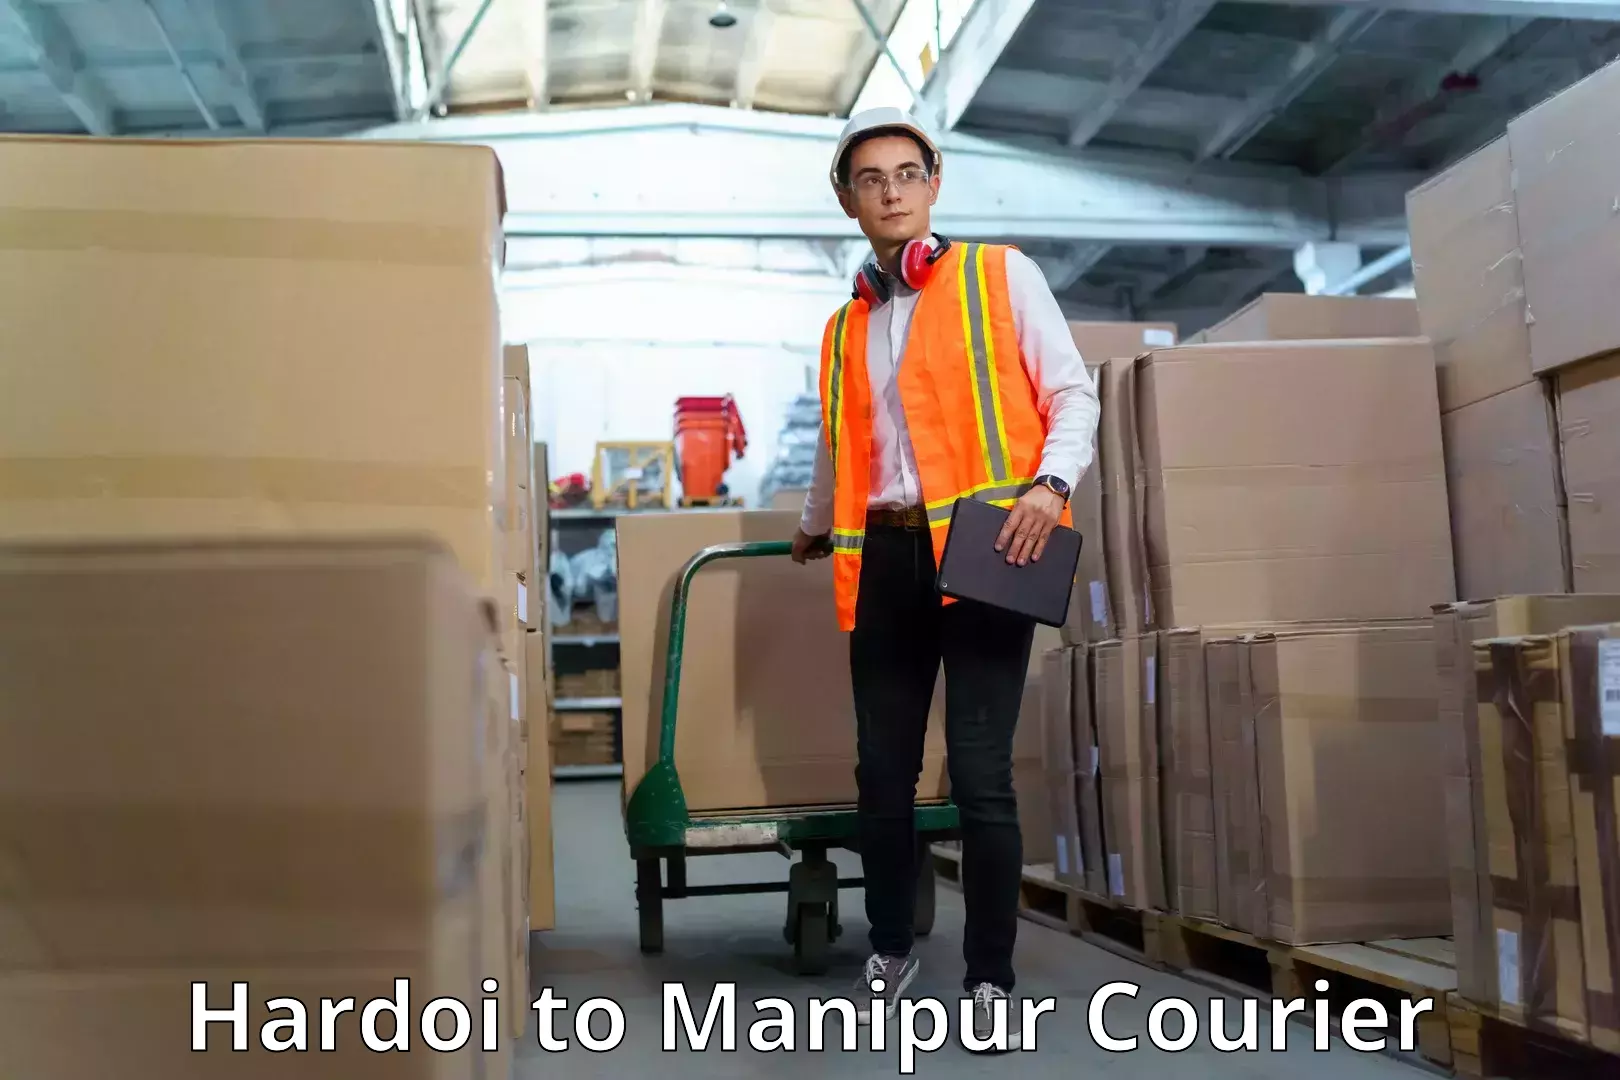 Nationwide shipping services Hardoi to Moirang